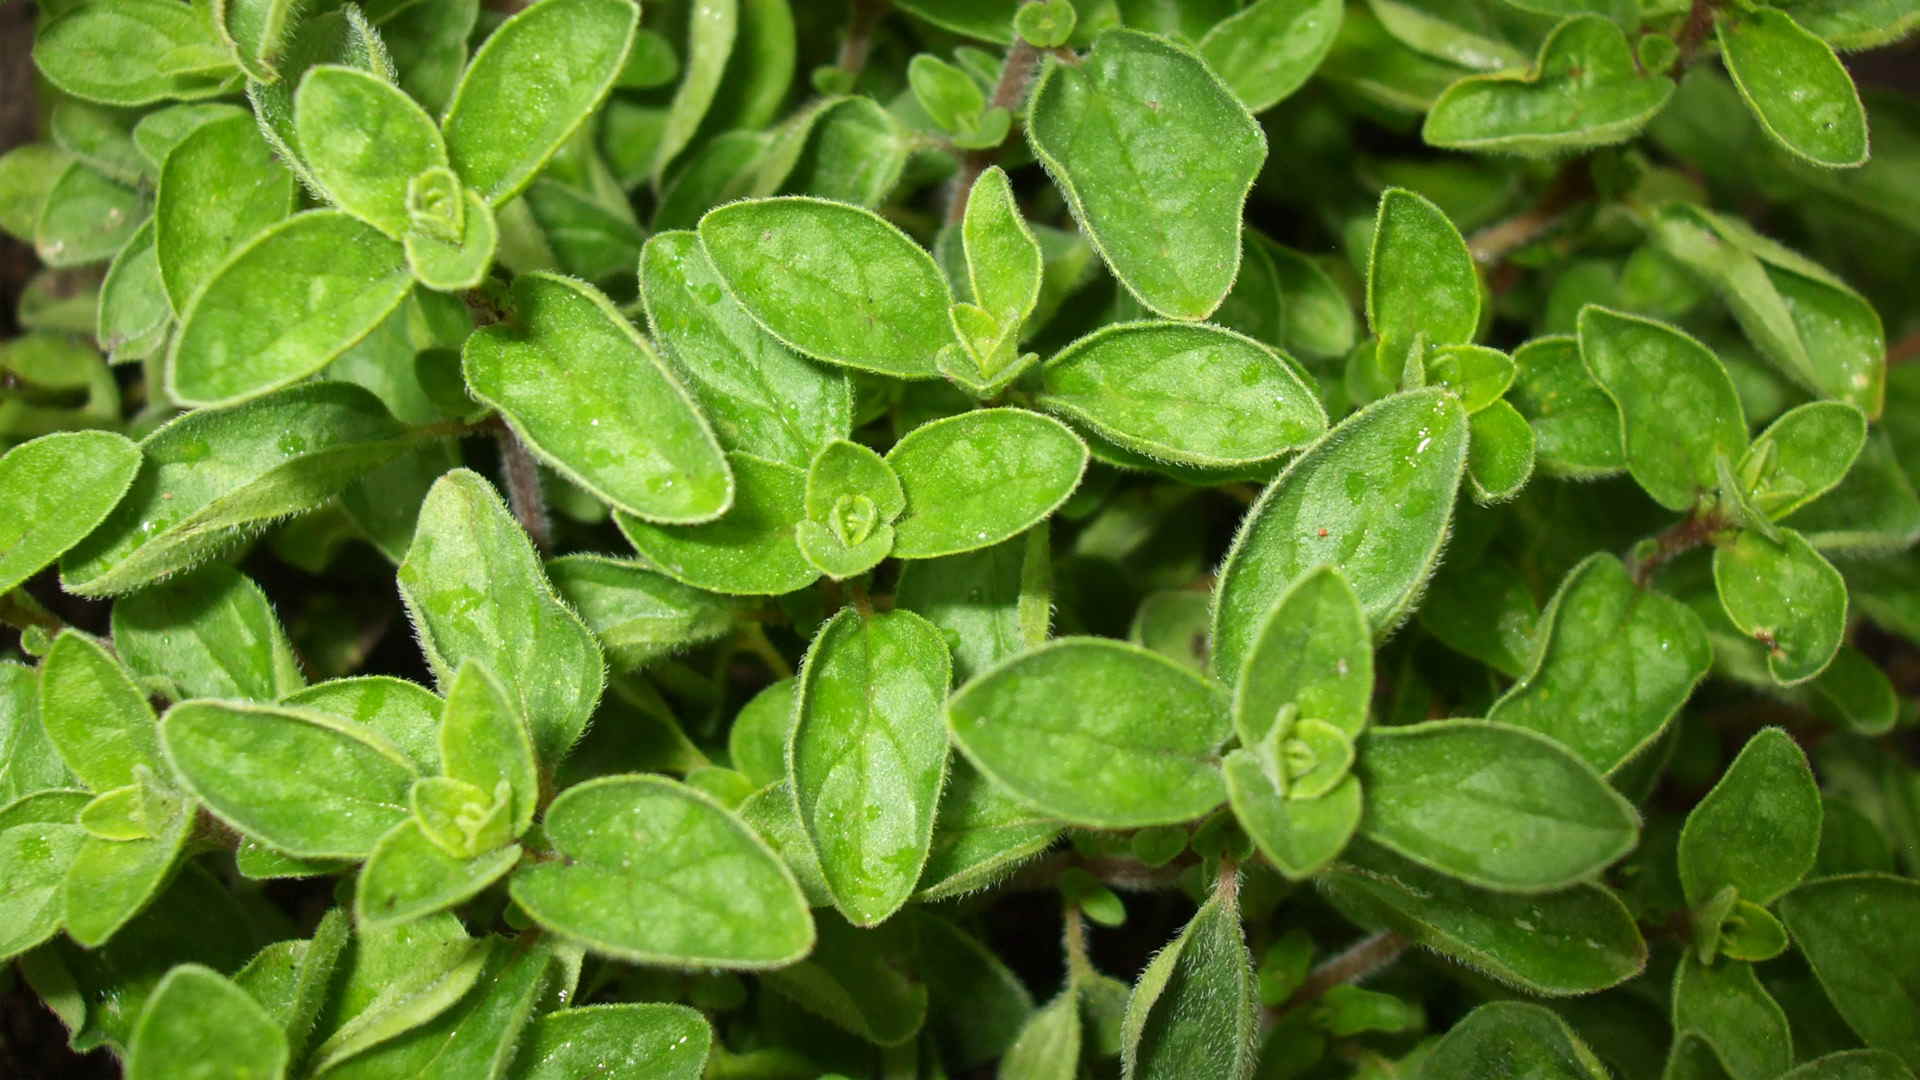 Con la versátil planta se pueden preparar múltiples recetas para cuidar la salud